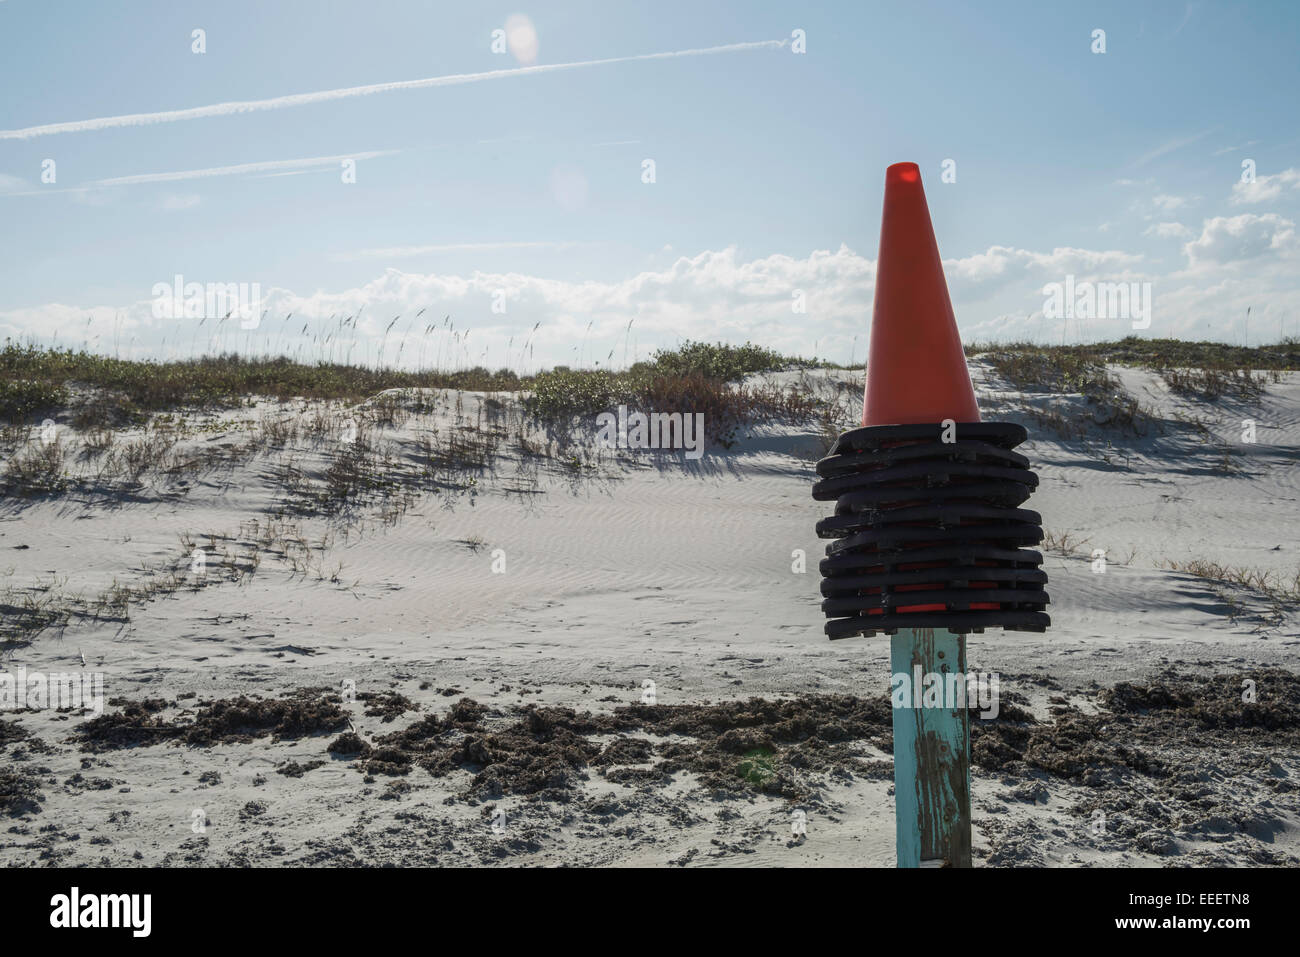 Des cônes de signalisation orange et noir empilés sont placés au sommet d'un poteau en bois avec une peinture bleu clair et abîmé devant les dunes de sable de Daytona Beach, en Floride. Banque D'Images